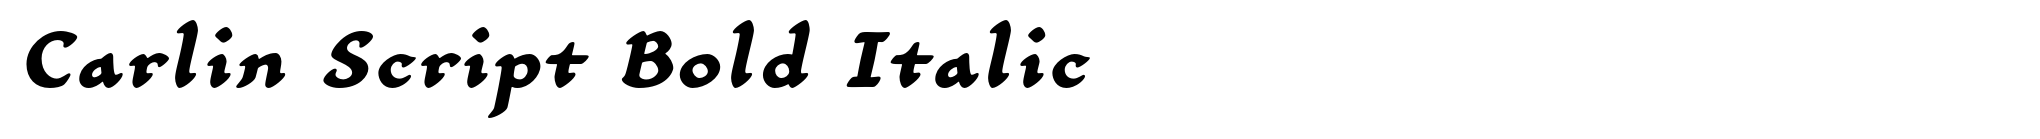 Carlin Script Bold Italic image